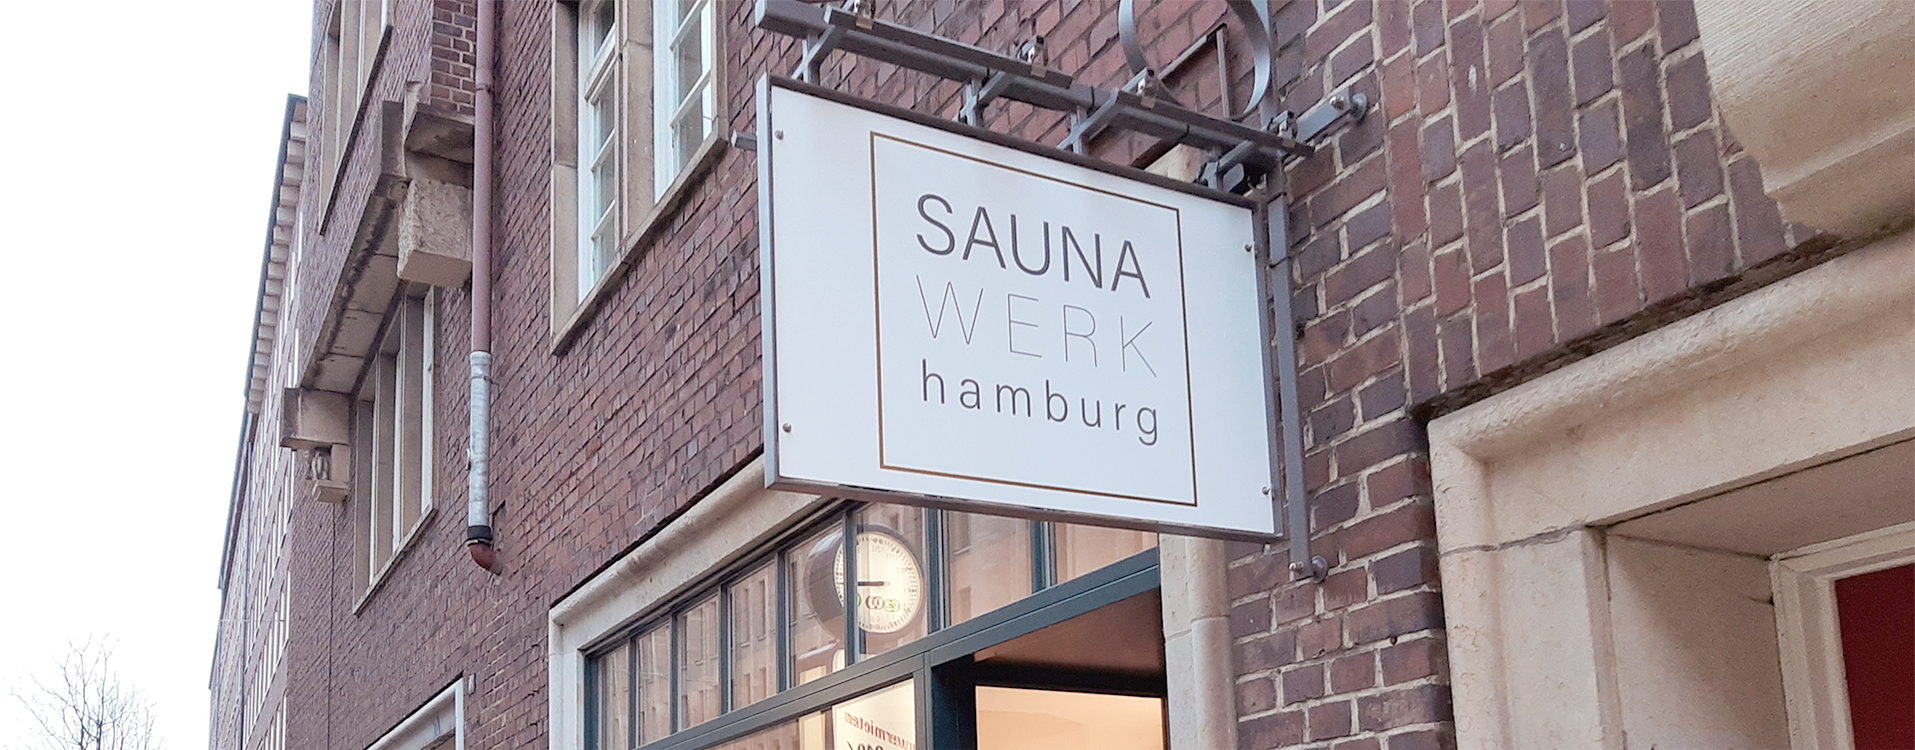 Schild von SAUNA WERK hamburg draußen vor dem Sauna-Geschäft